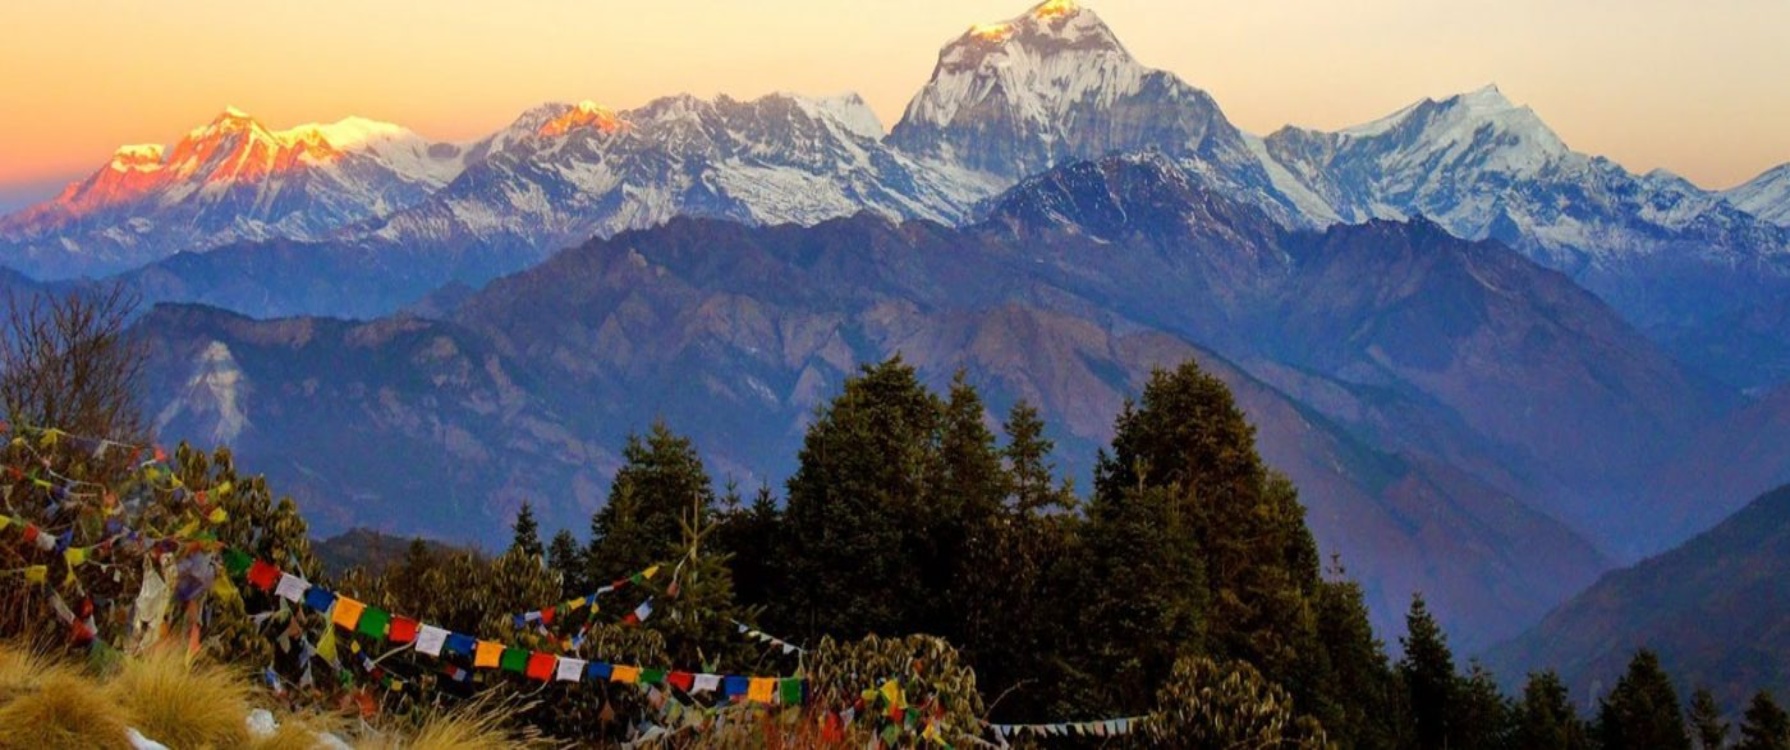 Ghorepani-Poon-Hill-Sunrise-Trek-Nepal-1400x500-c 